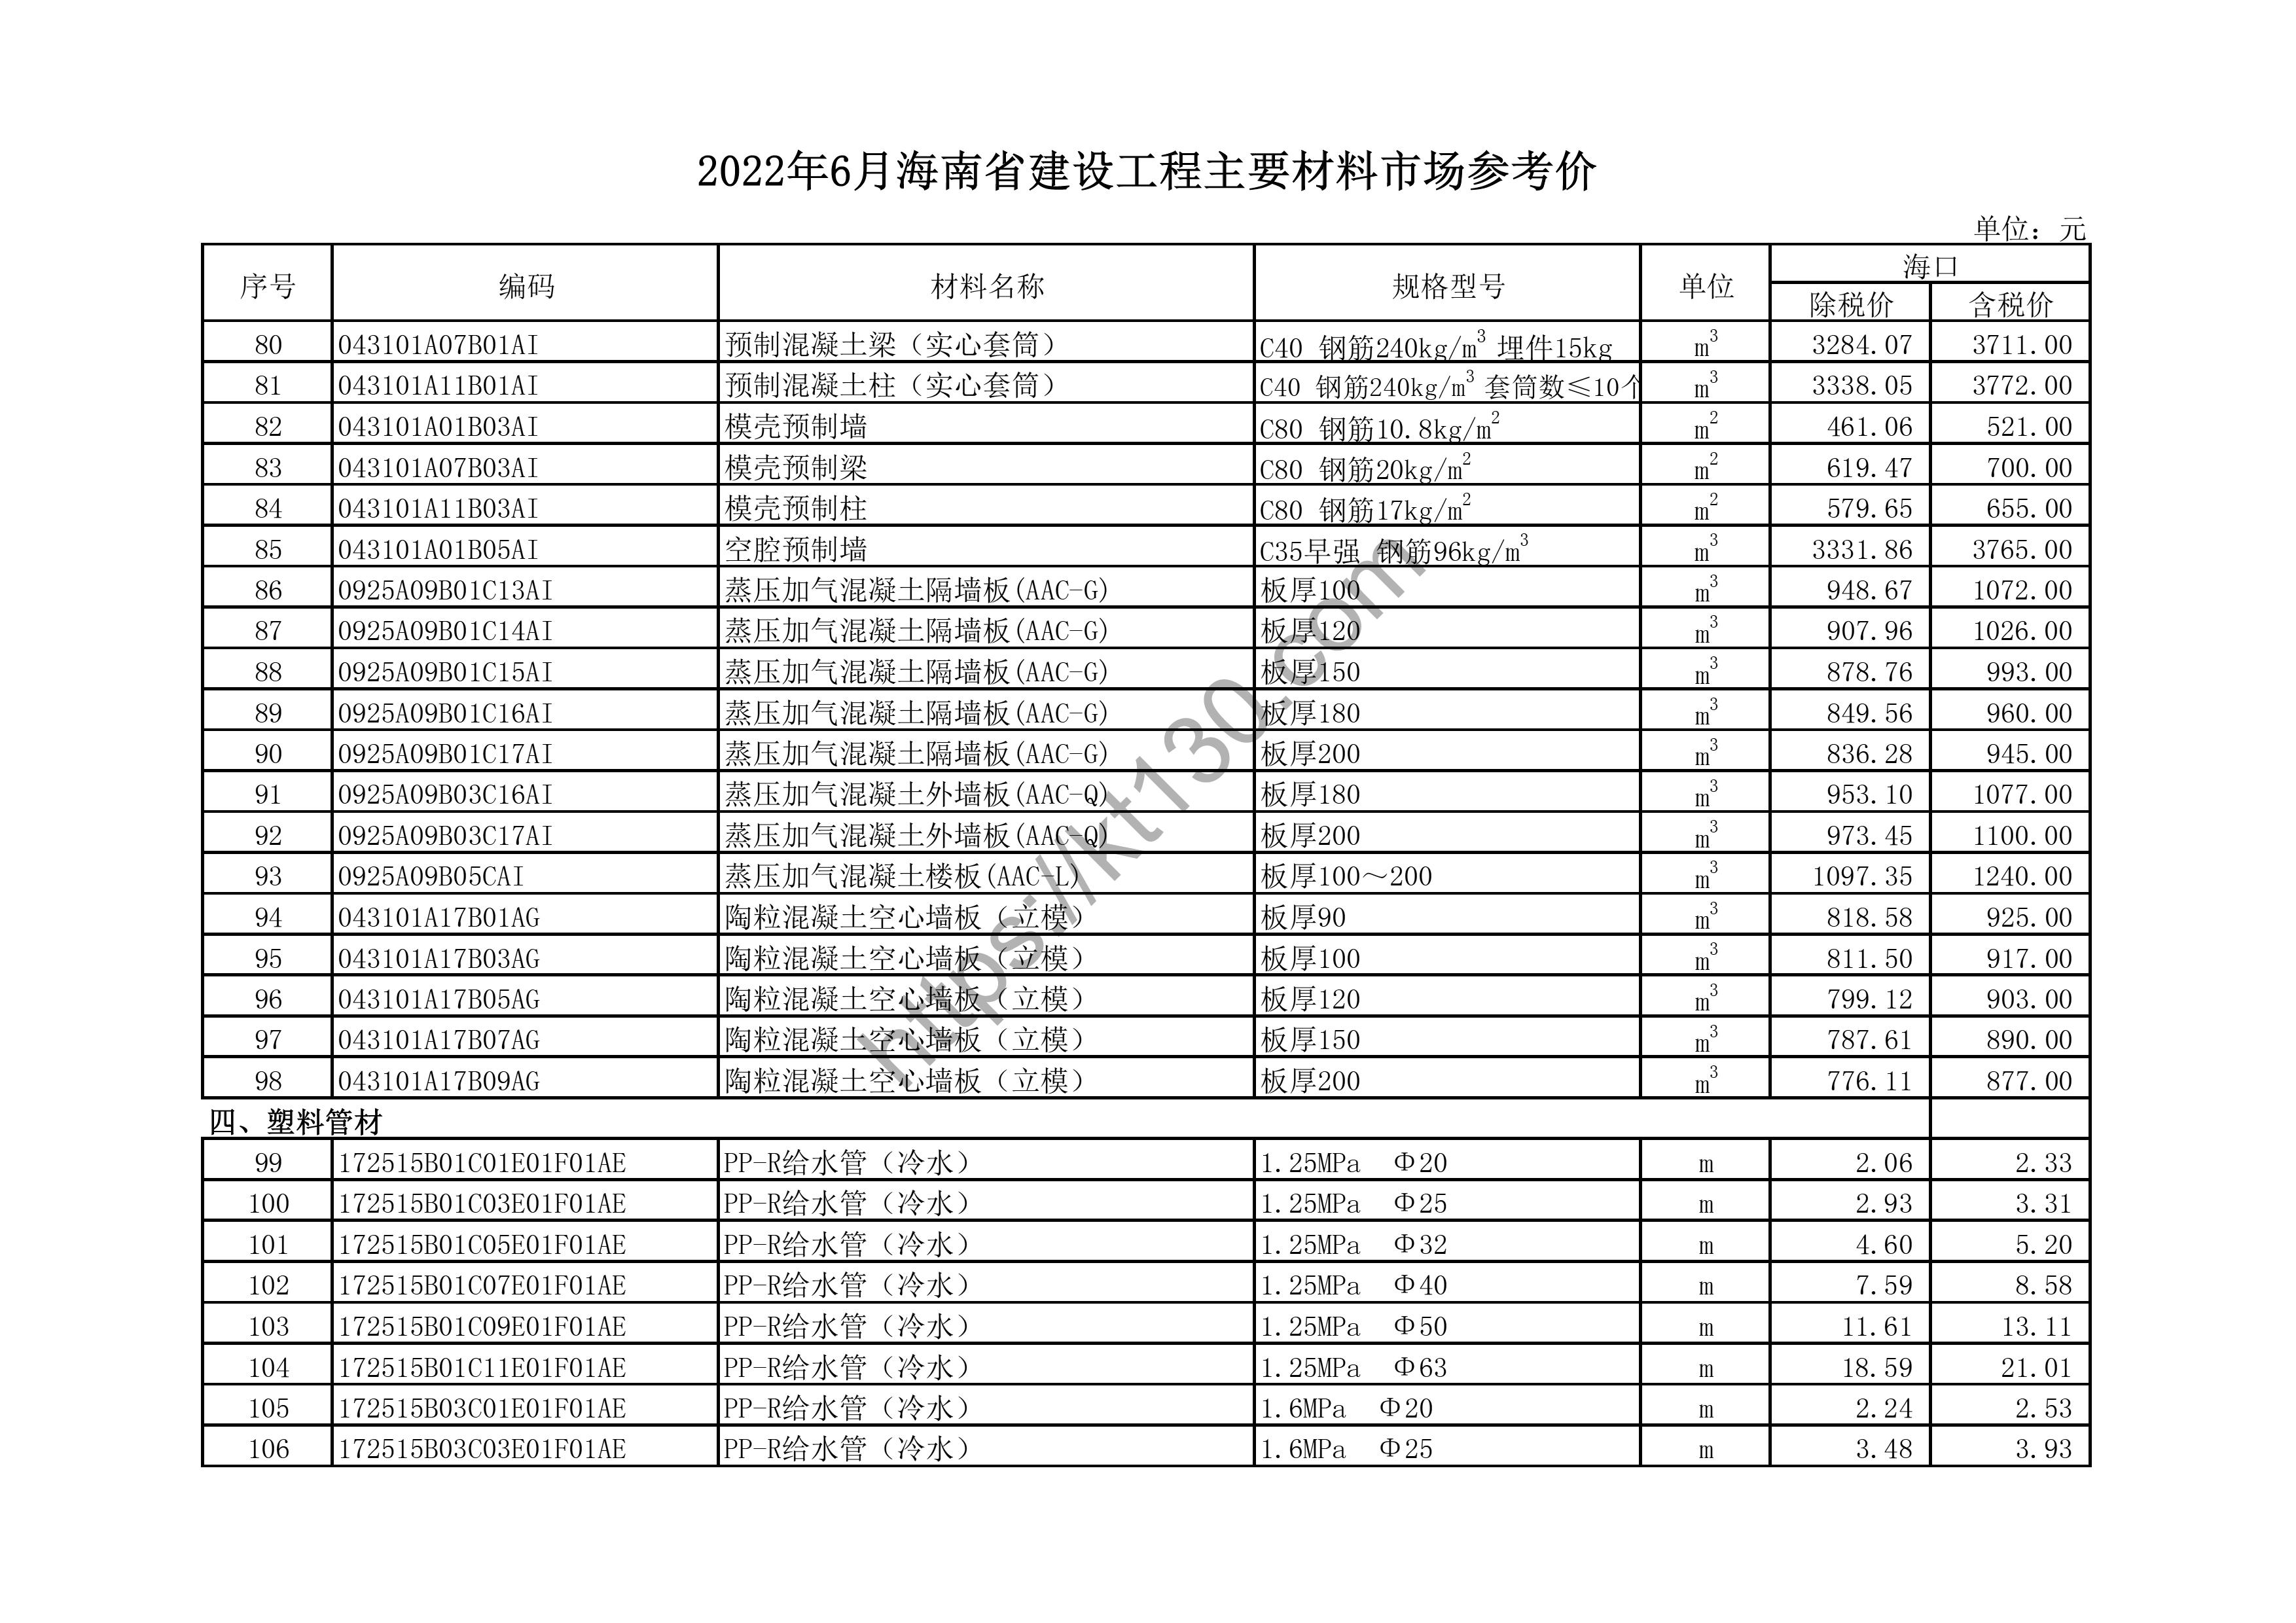 海南省2022年6月建筑材料价_木、竹材料及制品_44426